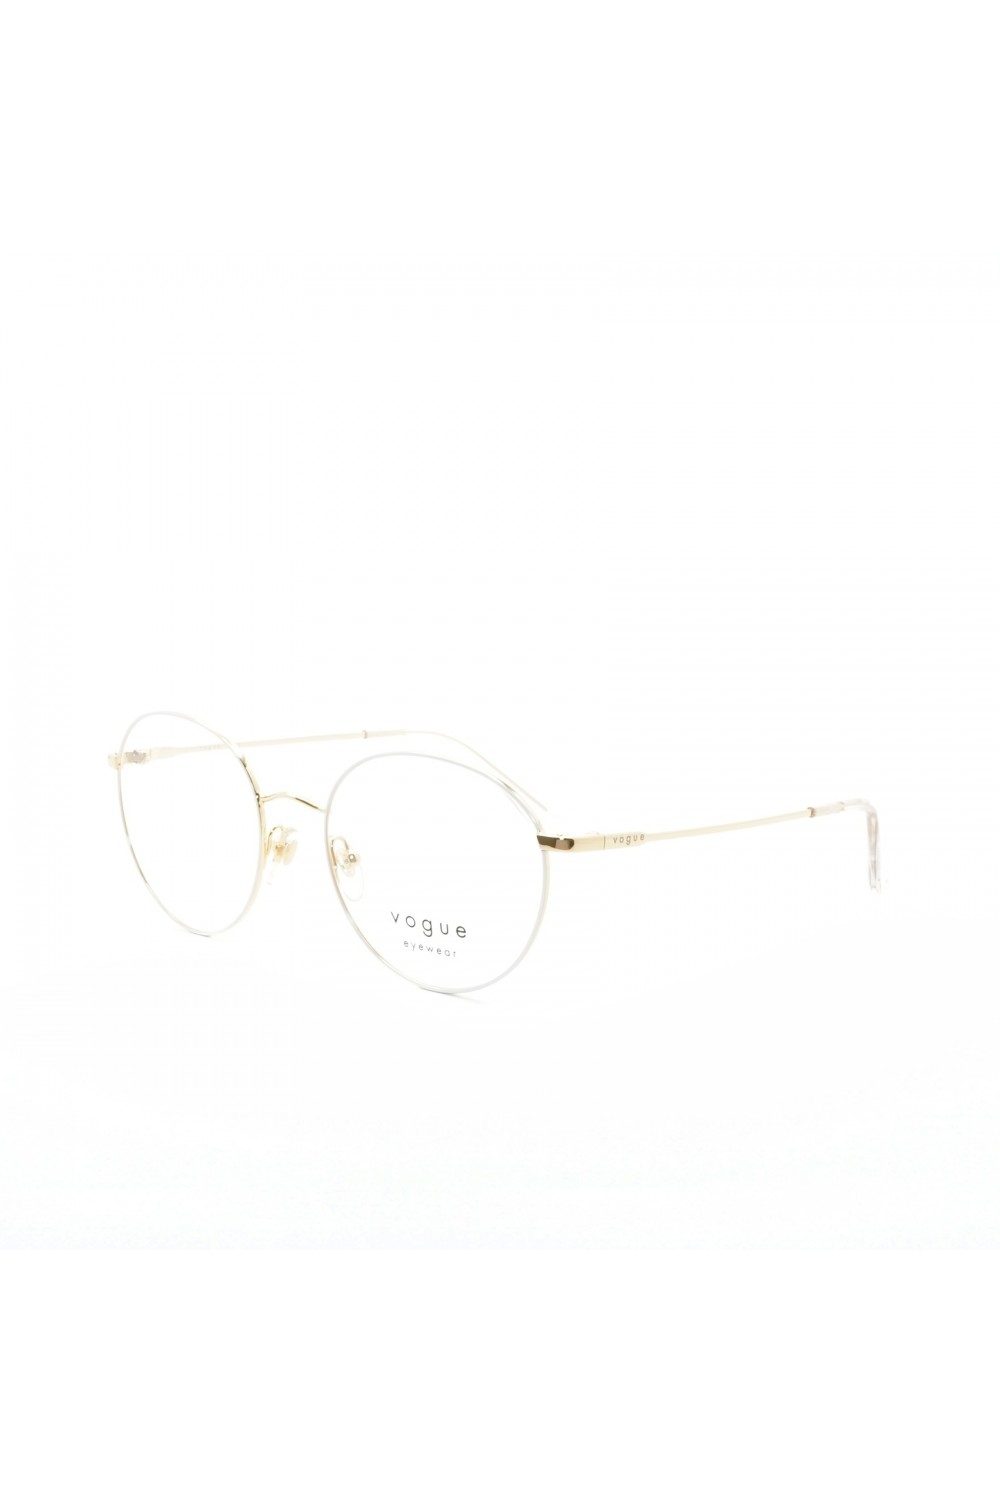 Vogue - Occhiali da vista in metallo tondi per donna bianco - 4177 5120